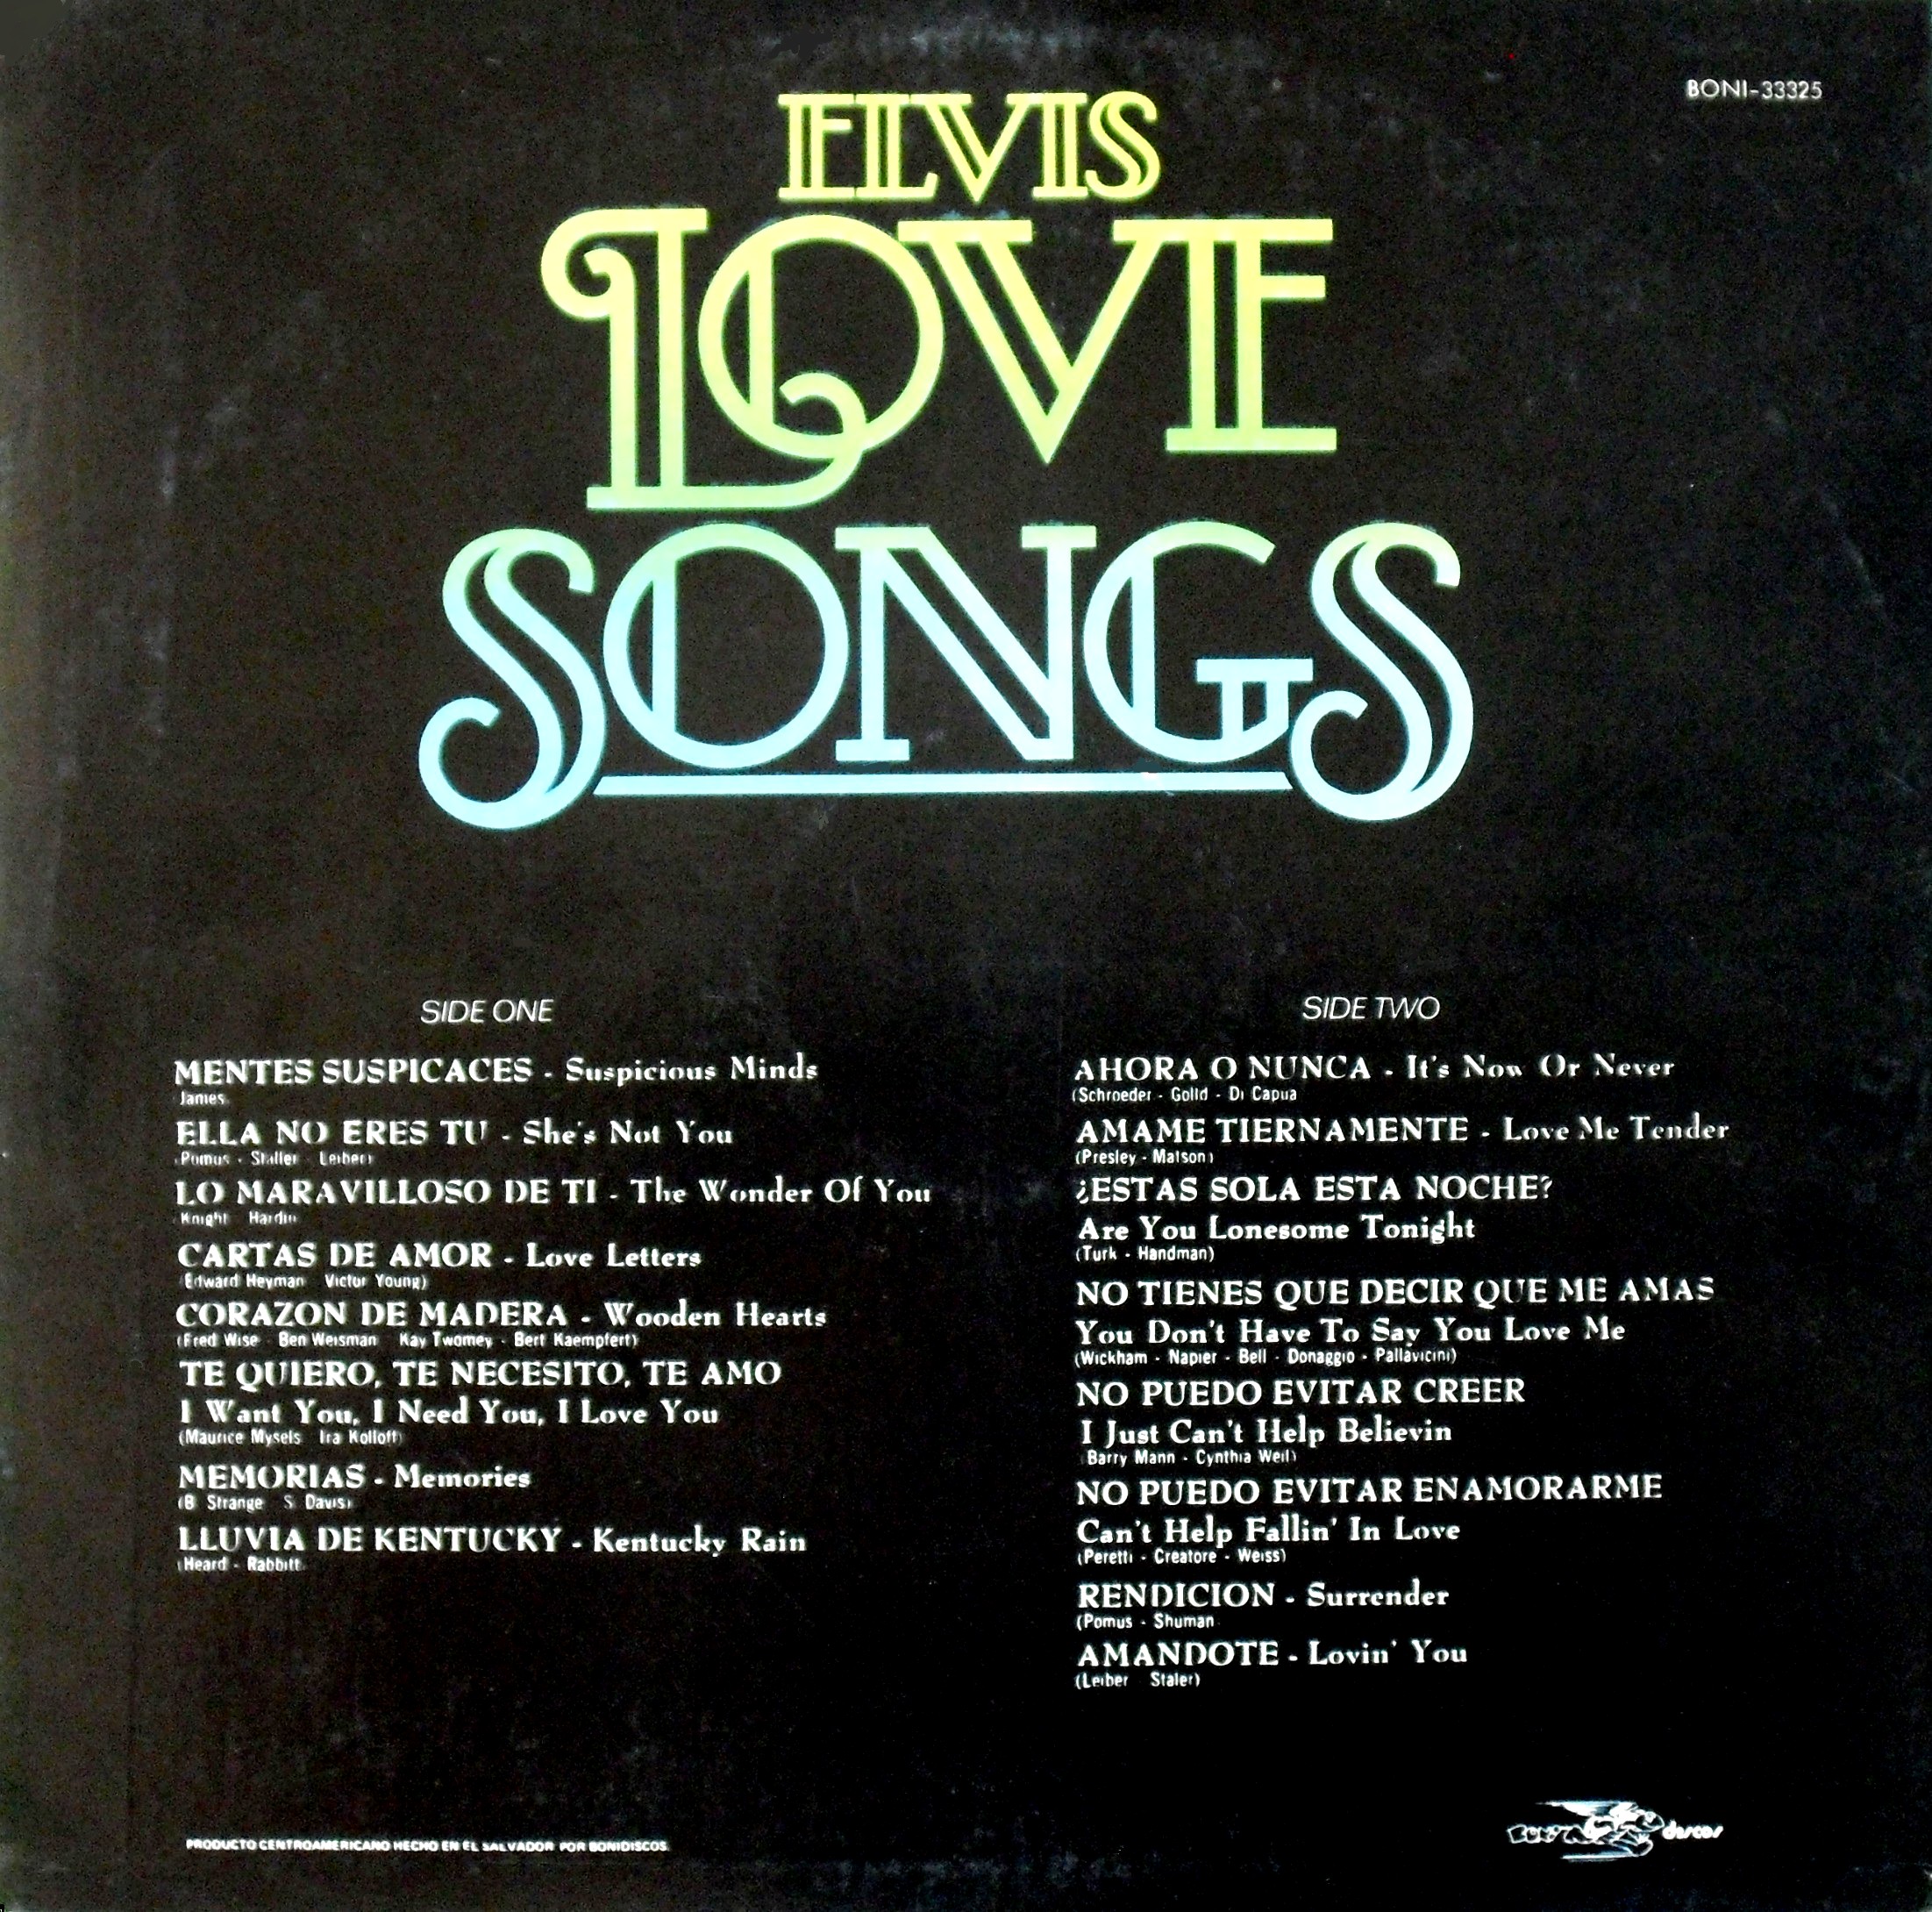 El Salvador - ELVIS LOVE SONGS 02rskloie